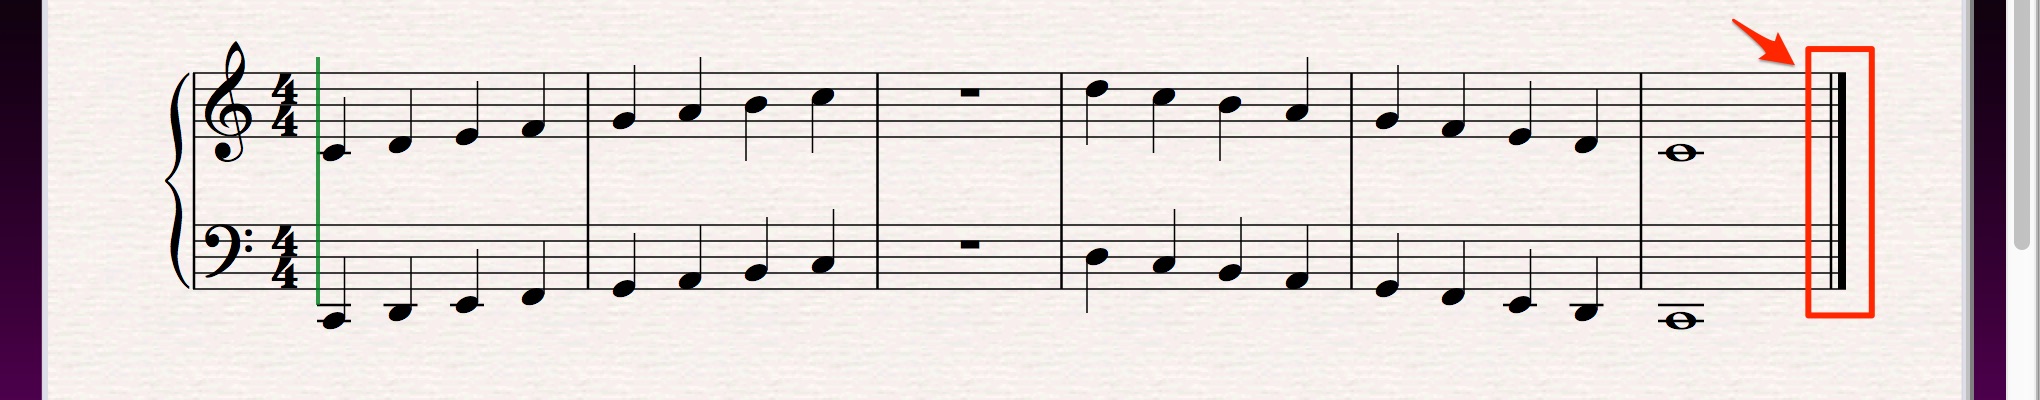 無題_と_Avid_Japan_Audio_Blog__Sibeliusで歌もの楽曲の楽譜作成にチャレンジ_3「画面のスクロール操作、旗の向きの調整、小節の追加・削除」